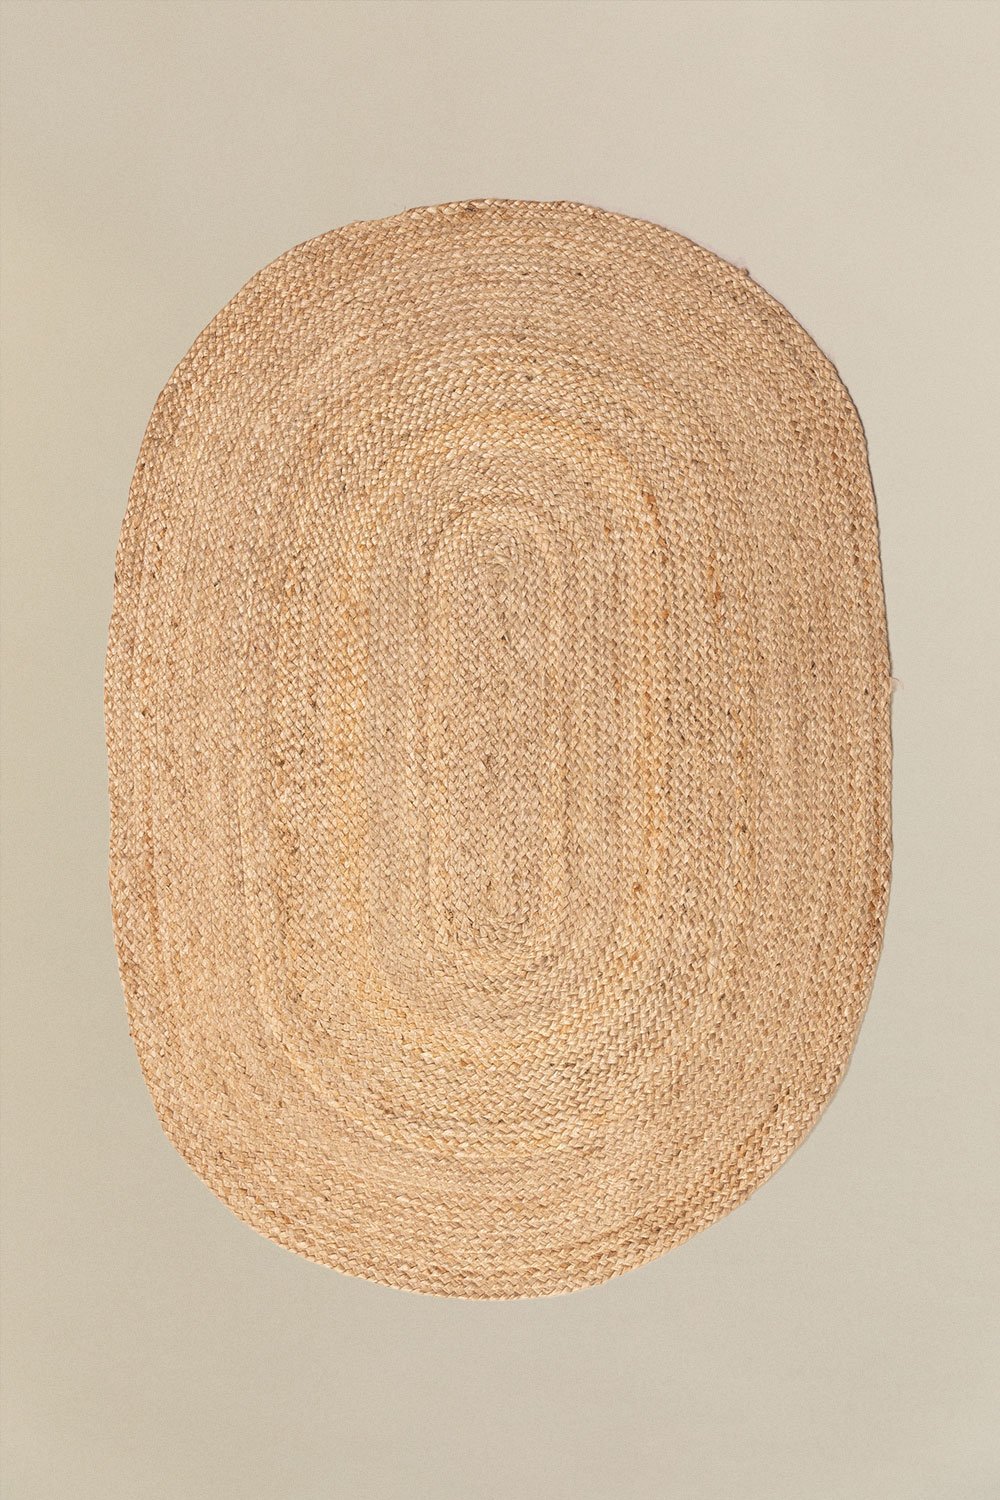 Dywan owalny z naturalnej juty (141x99,5 cm) Tempo, obrazek w galerii 1